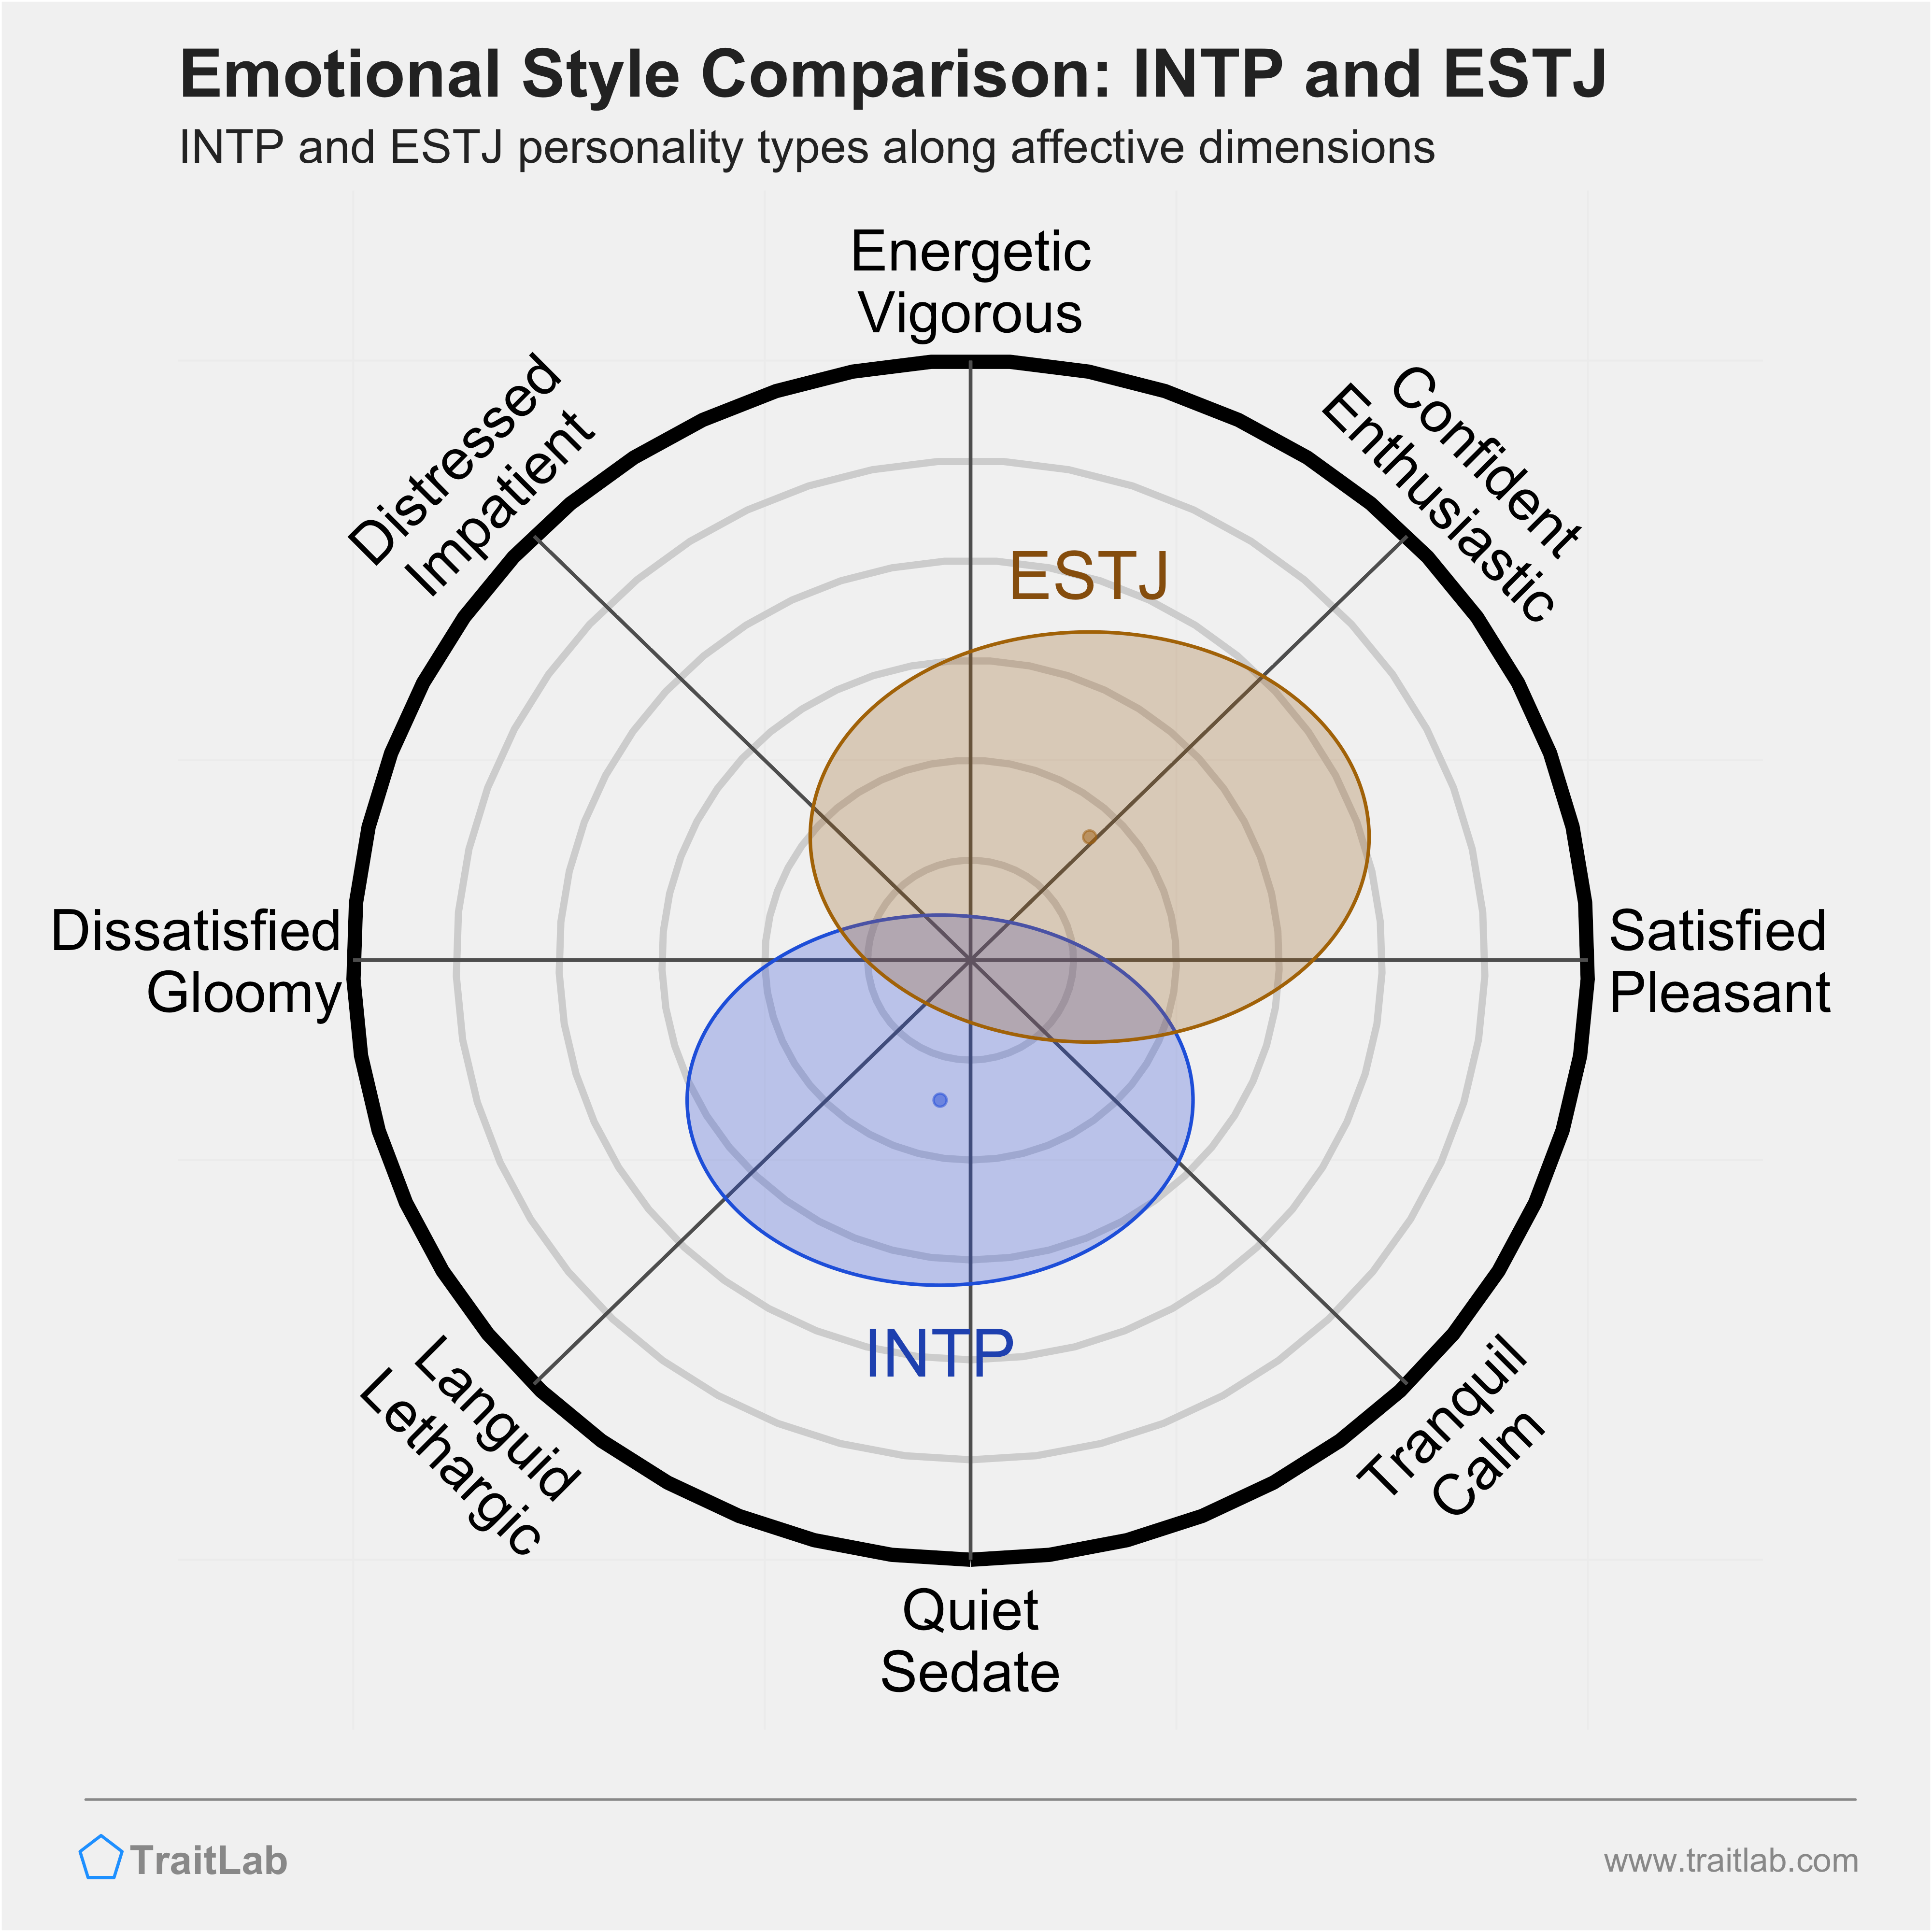 INTP and ESTJ comparison across emotional (affective) dimensions